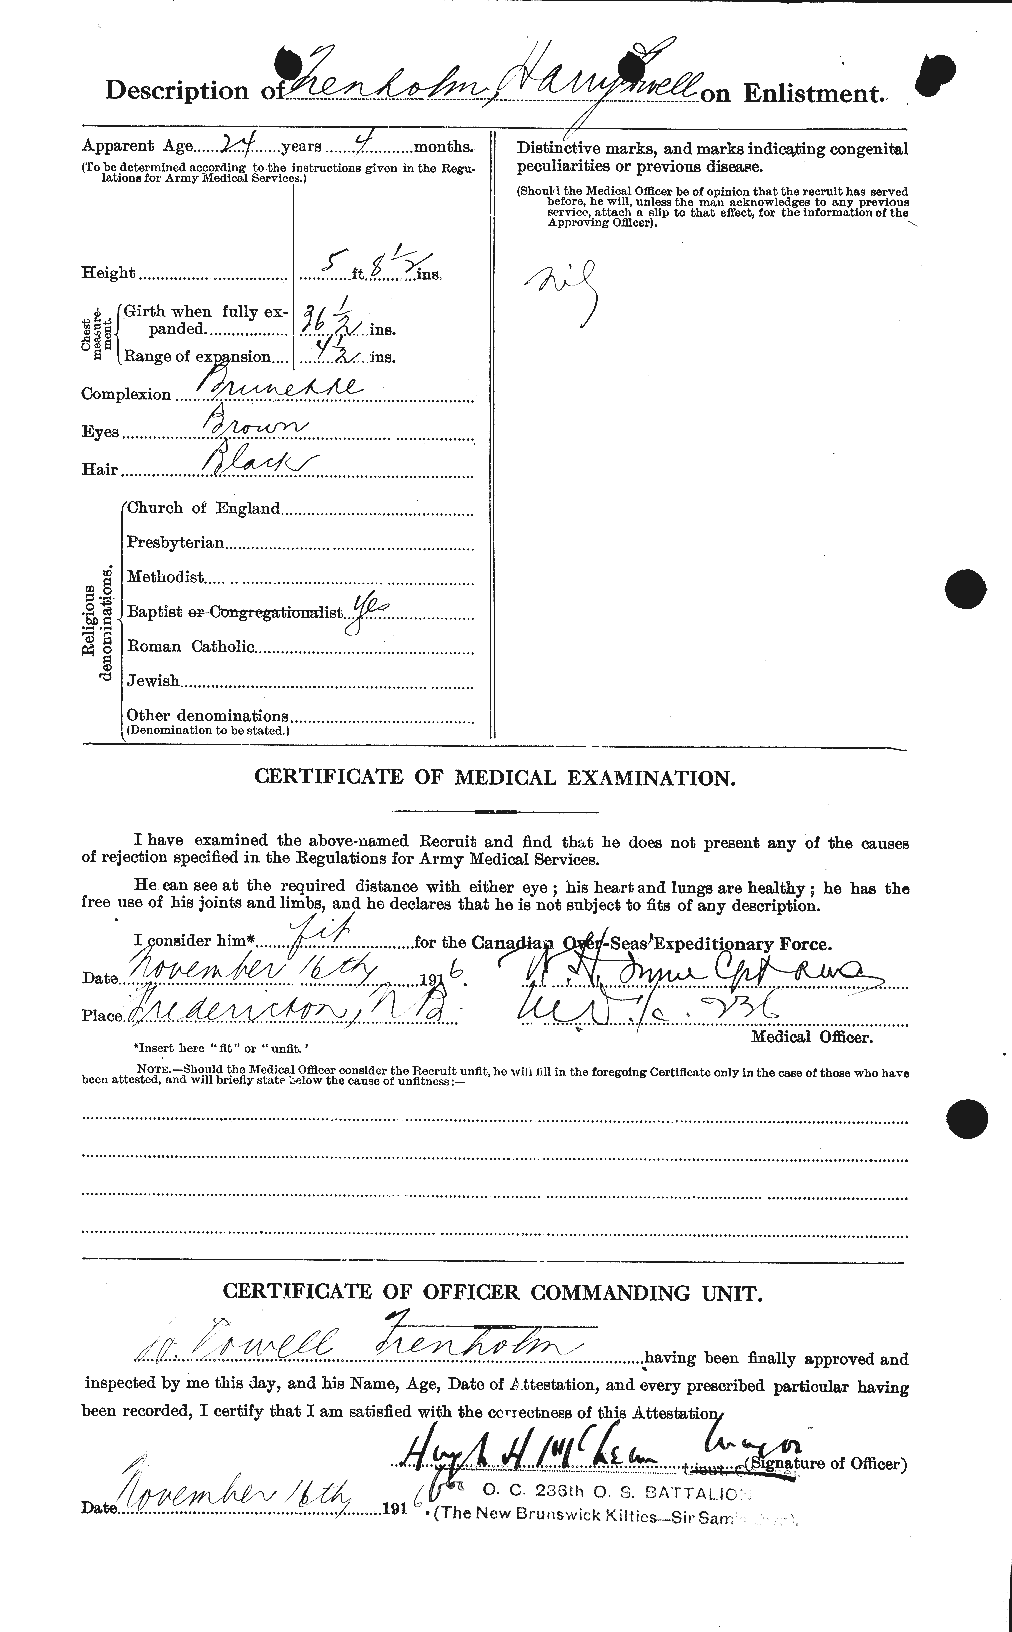 Dossiers du Personnel de la Première Guerre mondiale - CEC 638459b